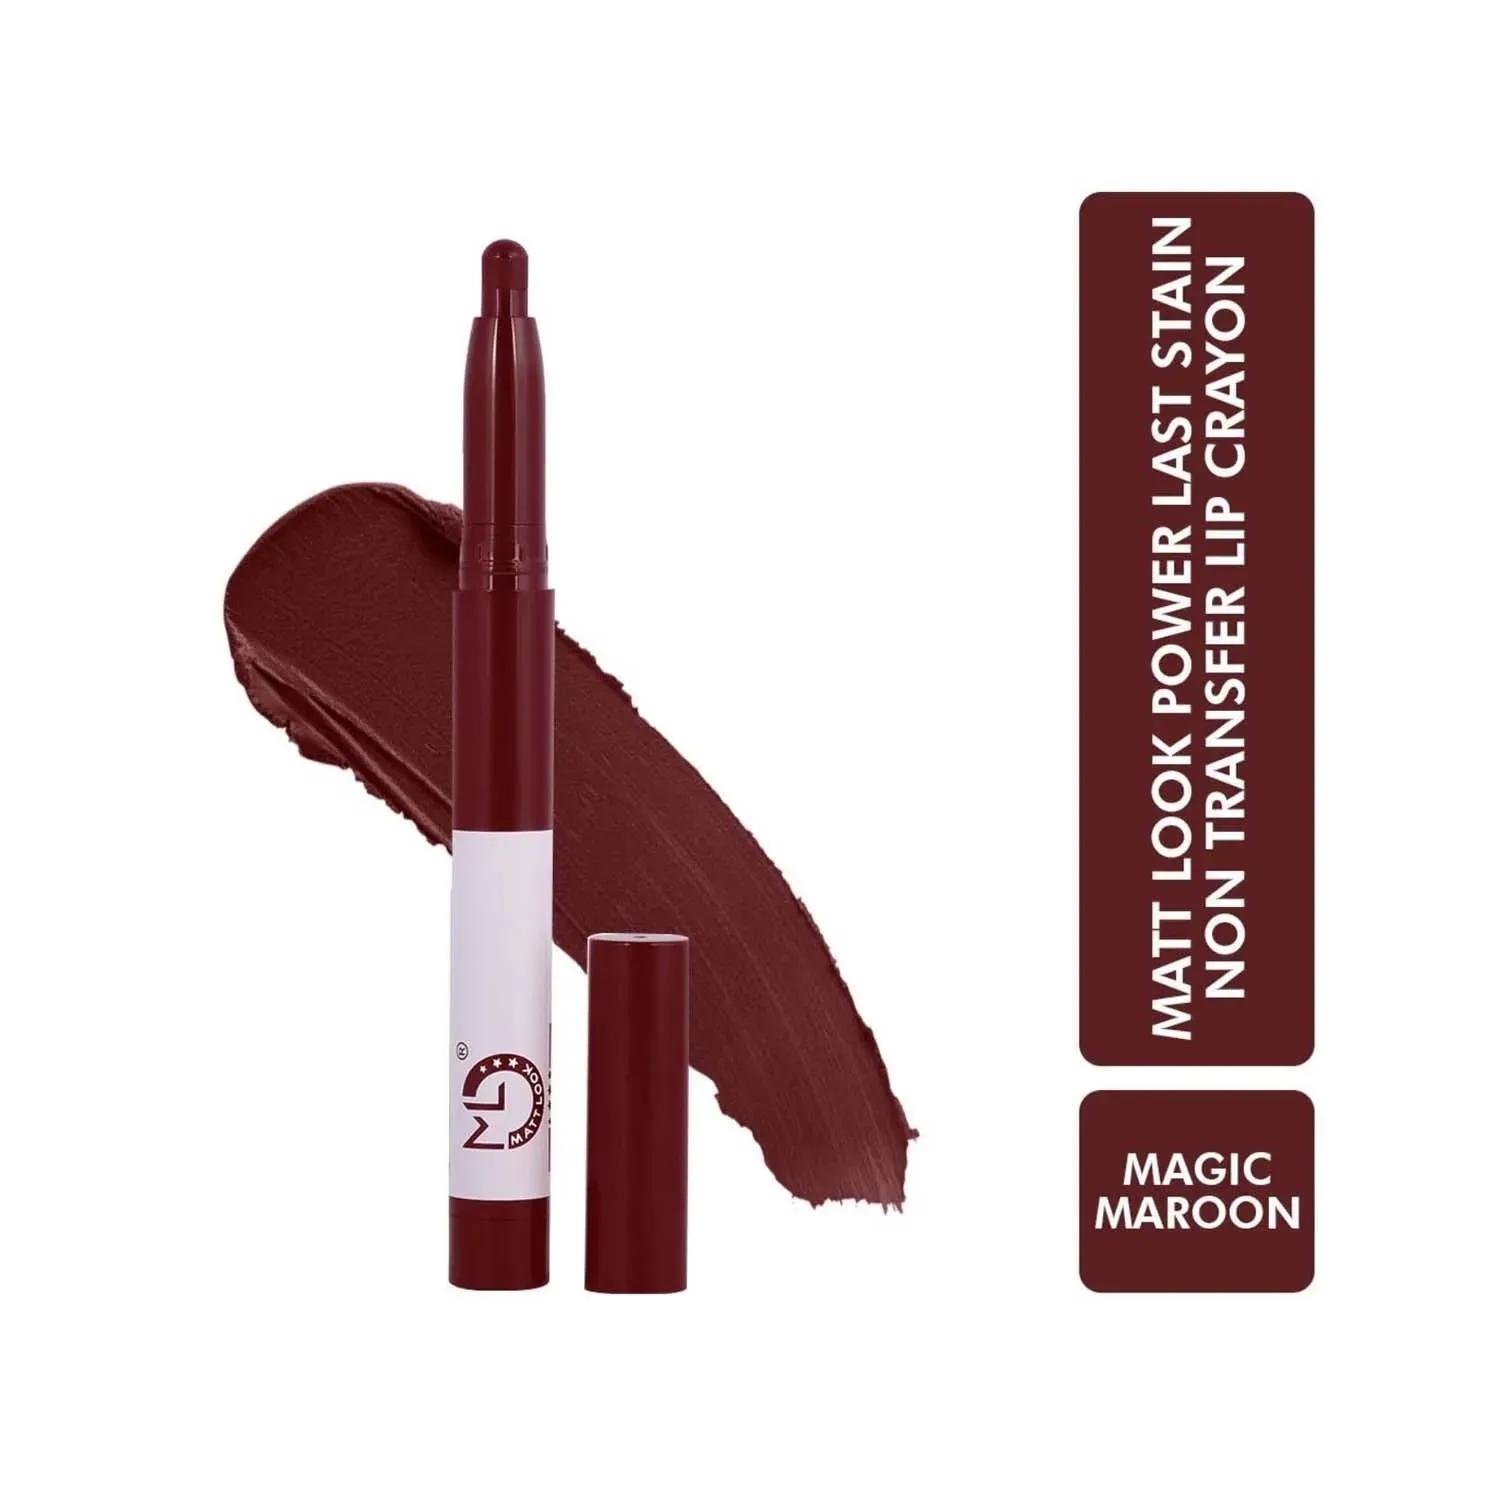 matt look power last lip stain crayon lipstick - magic maroon (1.3g)